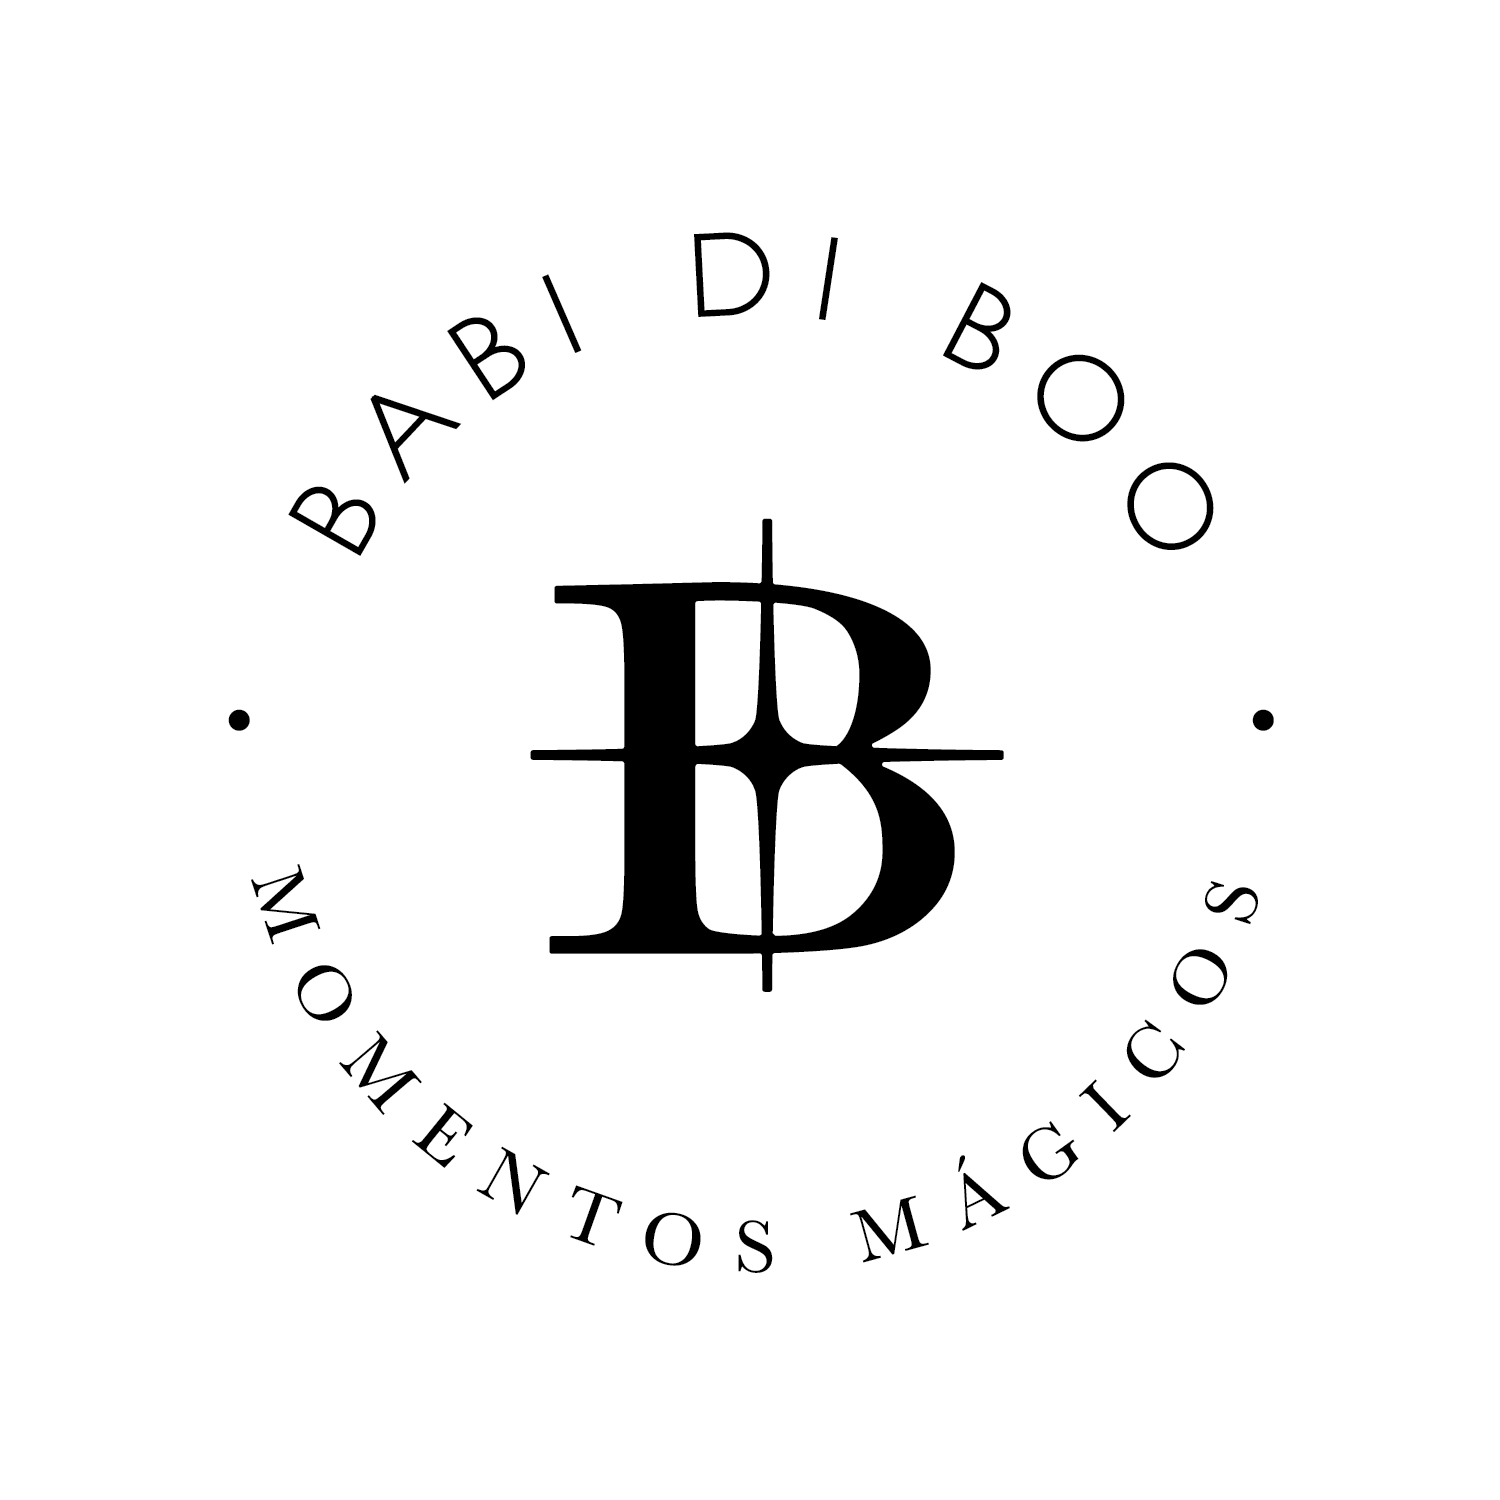 Babidiboo